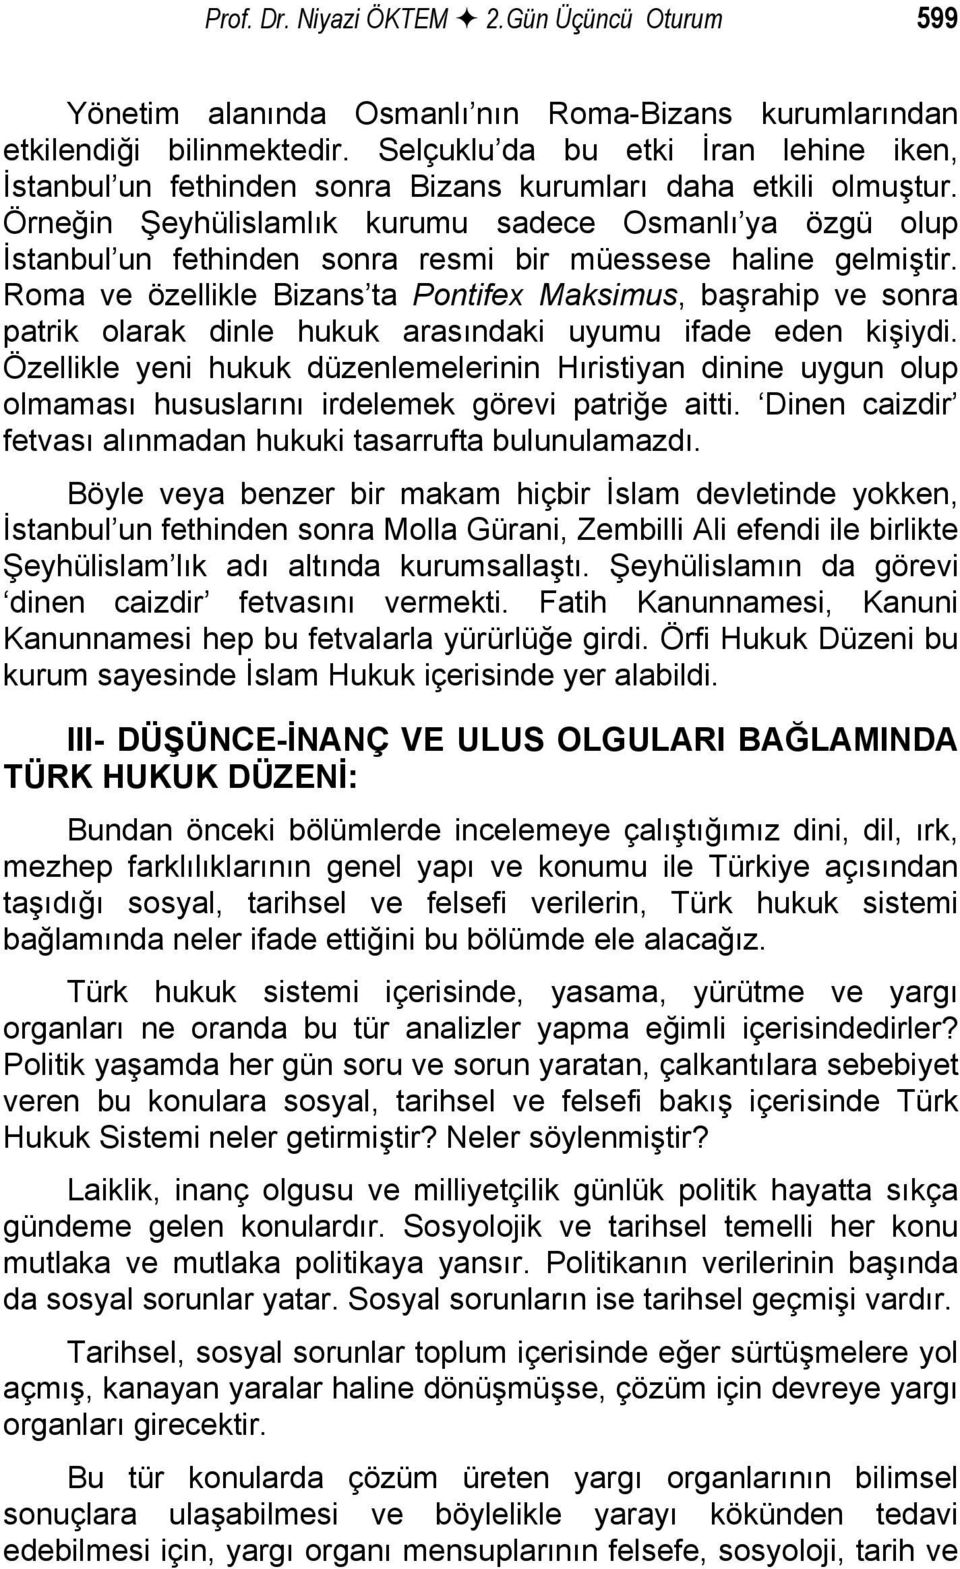 Örneğin Şeyhülislamlık kurumu sadece Osmanlı ya özgü olup İstanbul un fethinden sonra resmi bir müessese haline gelmiştir.